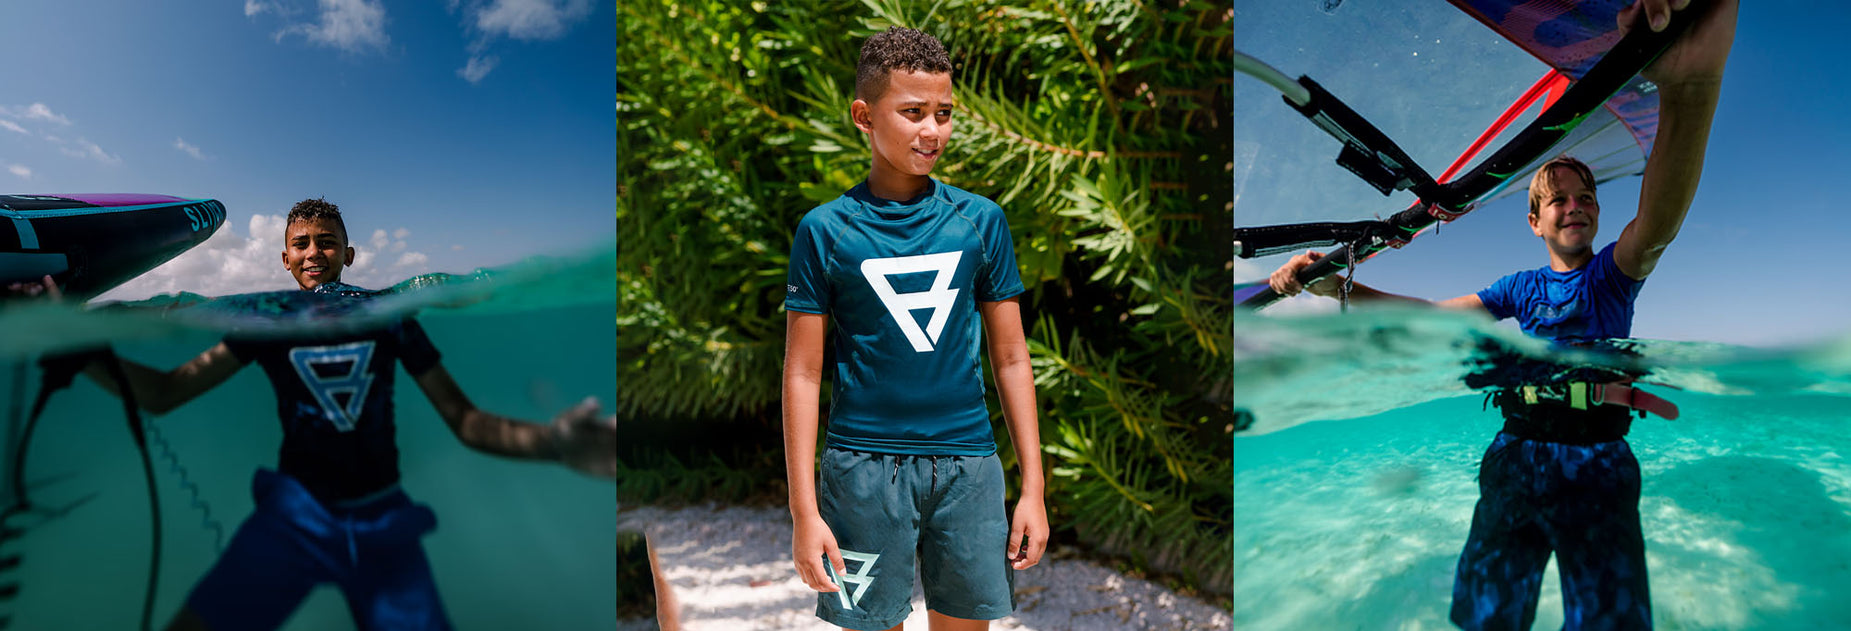 Deze jongen draagt een zwem lycra of rashguard van Brunotti met UV filter. Je huid is goed beschermd tegen de zon en ook tegen huid irritaties wanneer je op het board klimt.